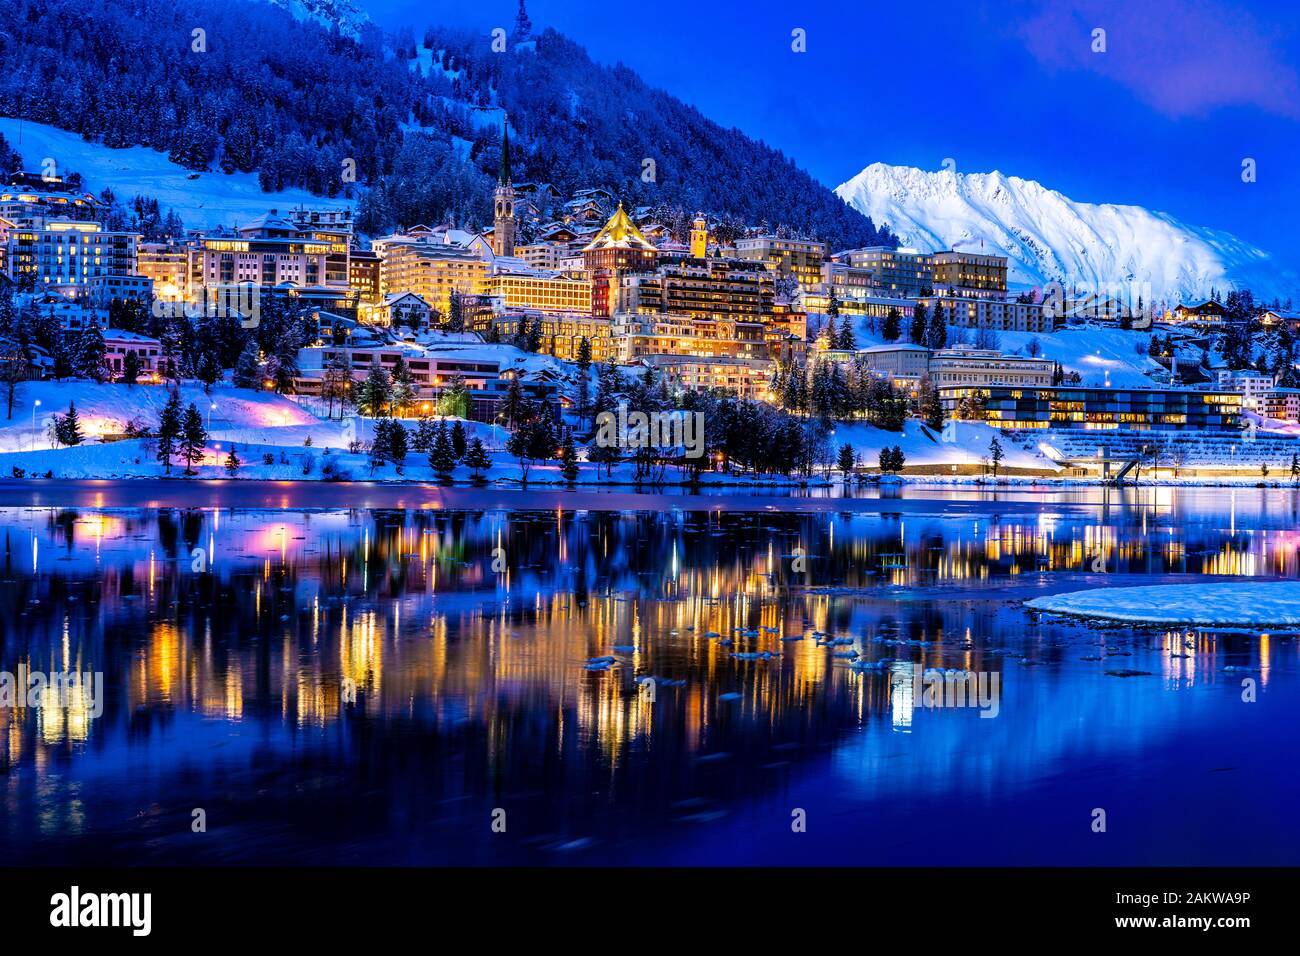 Blick auf die schöne Nachtbeleuchtung von St. Moritz in der Schweiz bei  Nacht, mit Rückblick vom See und den Schneebergen in Backgrouind  Stockfotografie - Alamy